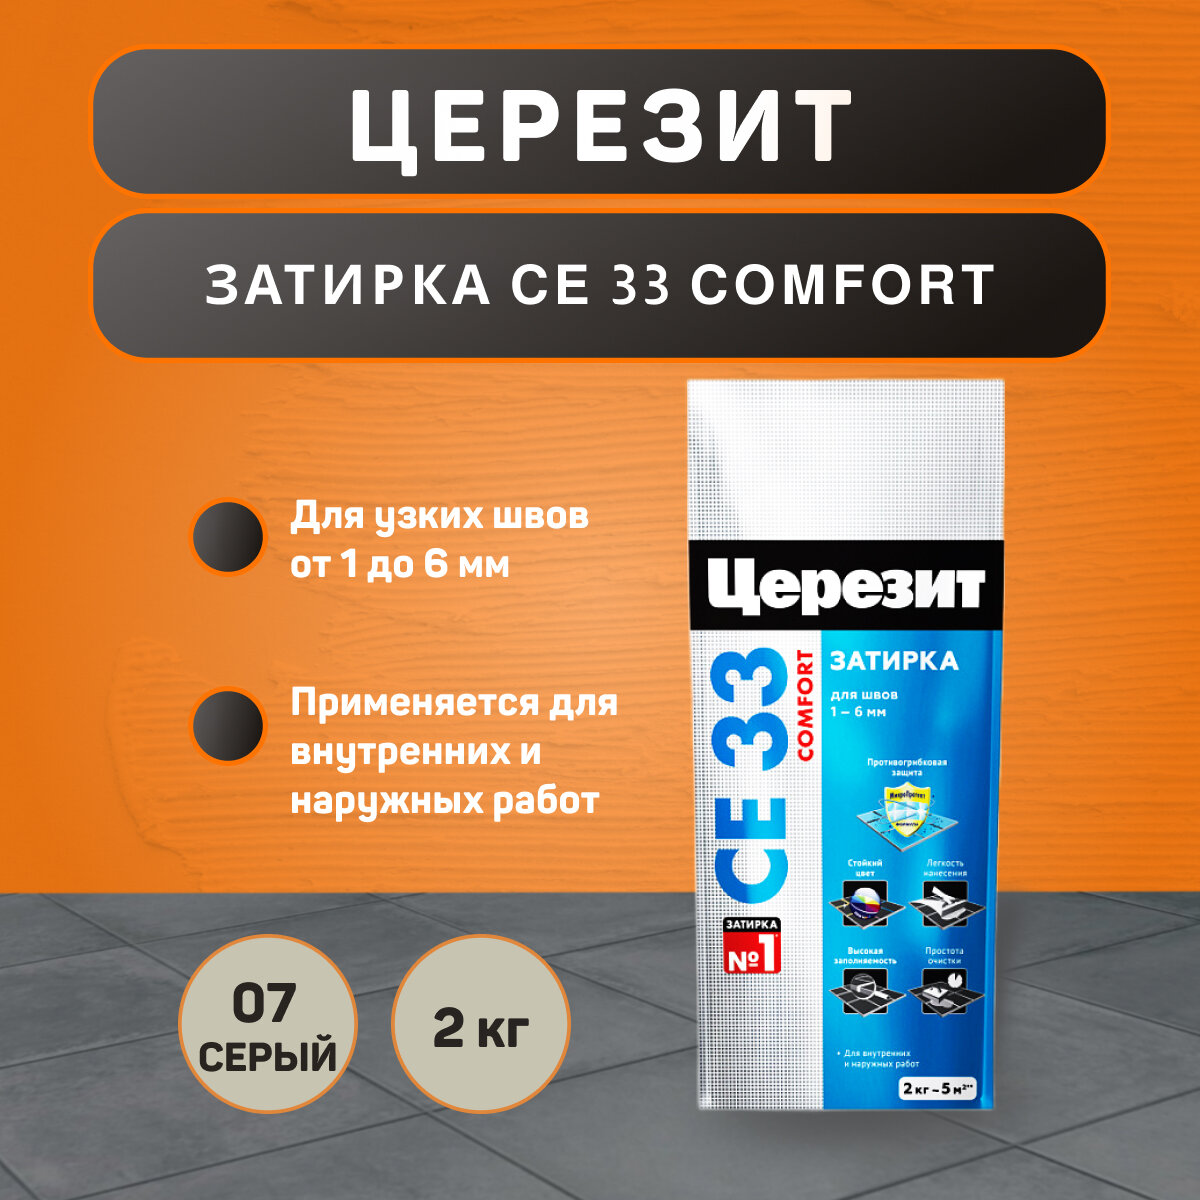 Затирка Ceresit CE 33 Comfort №07 серая 2 кг